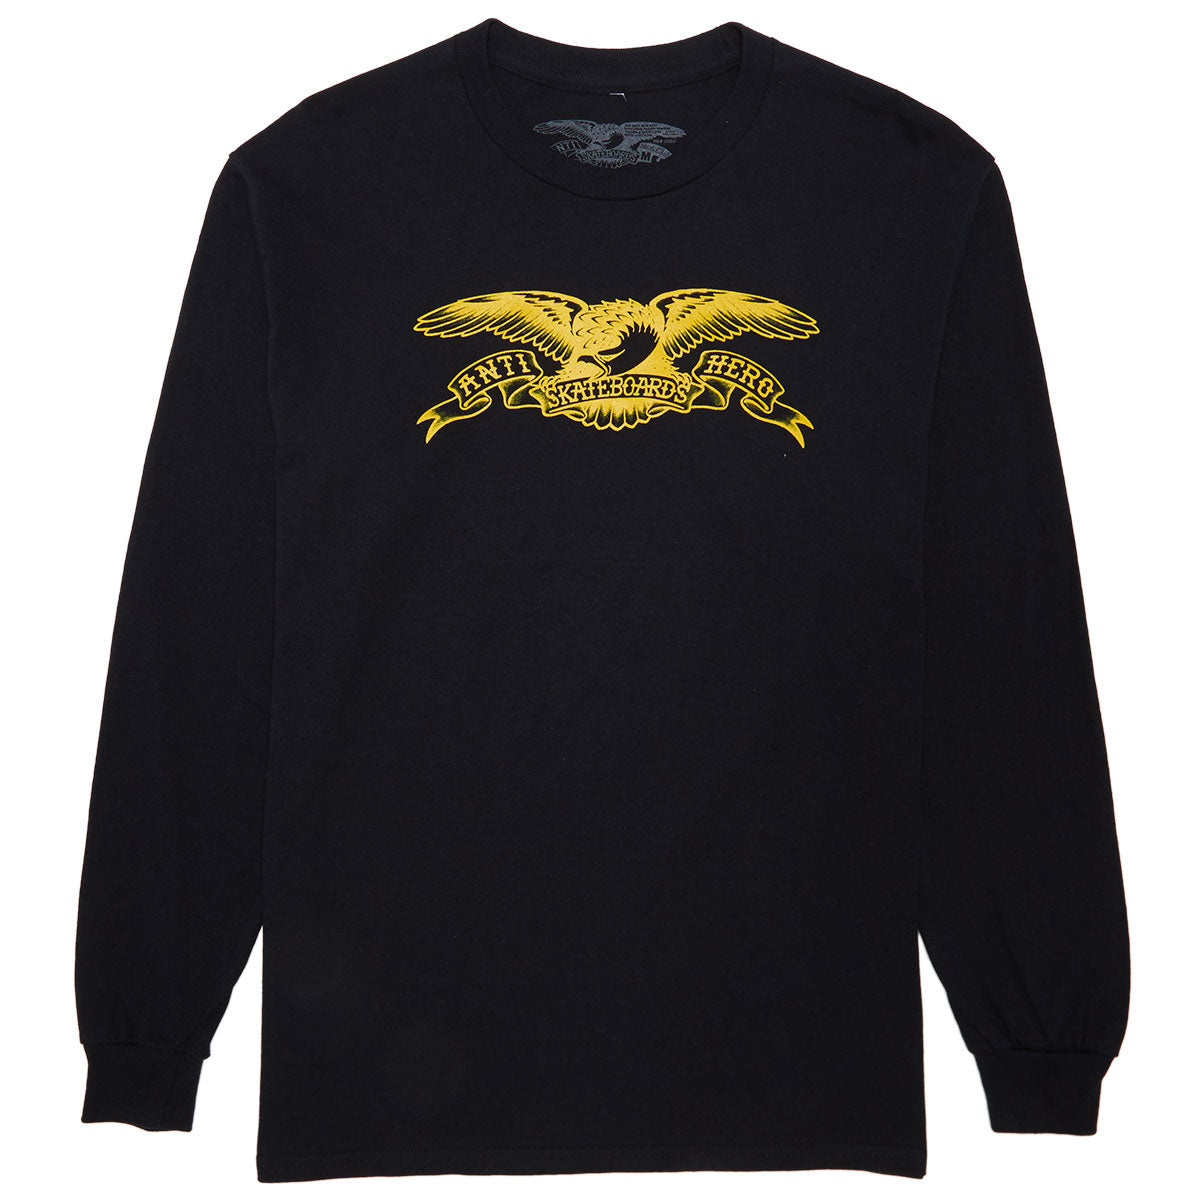 Anti-Hero Basic Eagle Long Sleeve T-Shirt - Black/Gold image 1